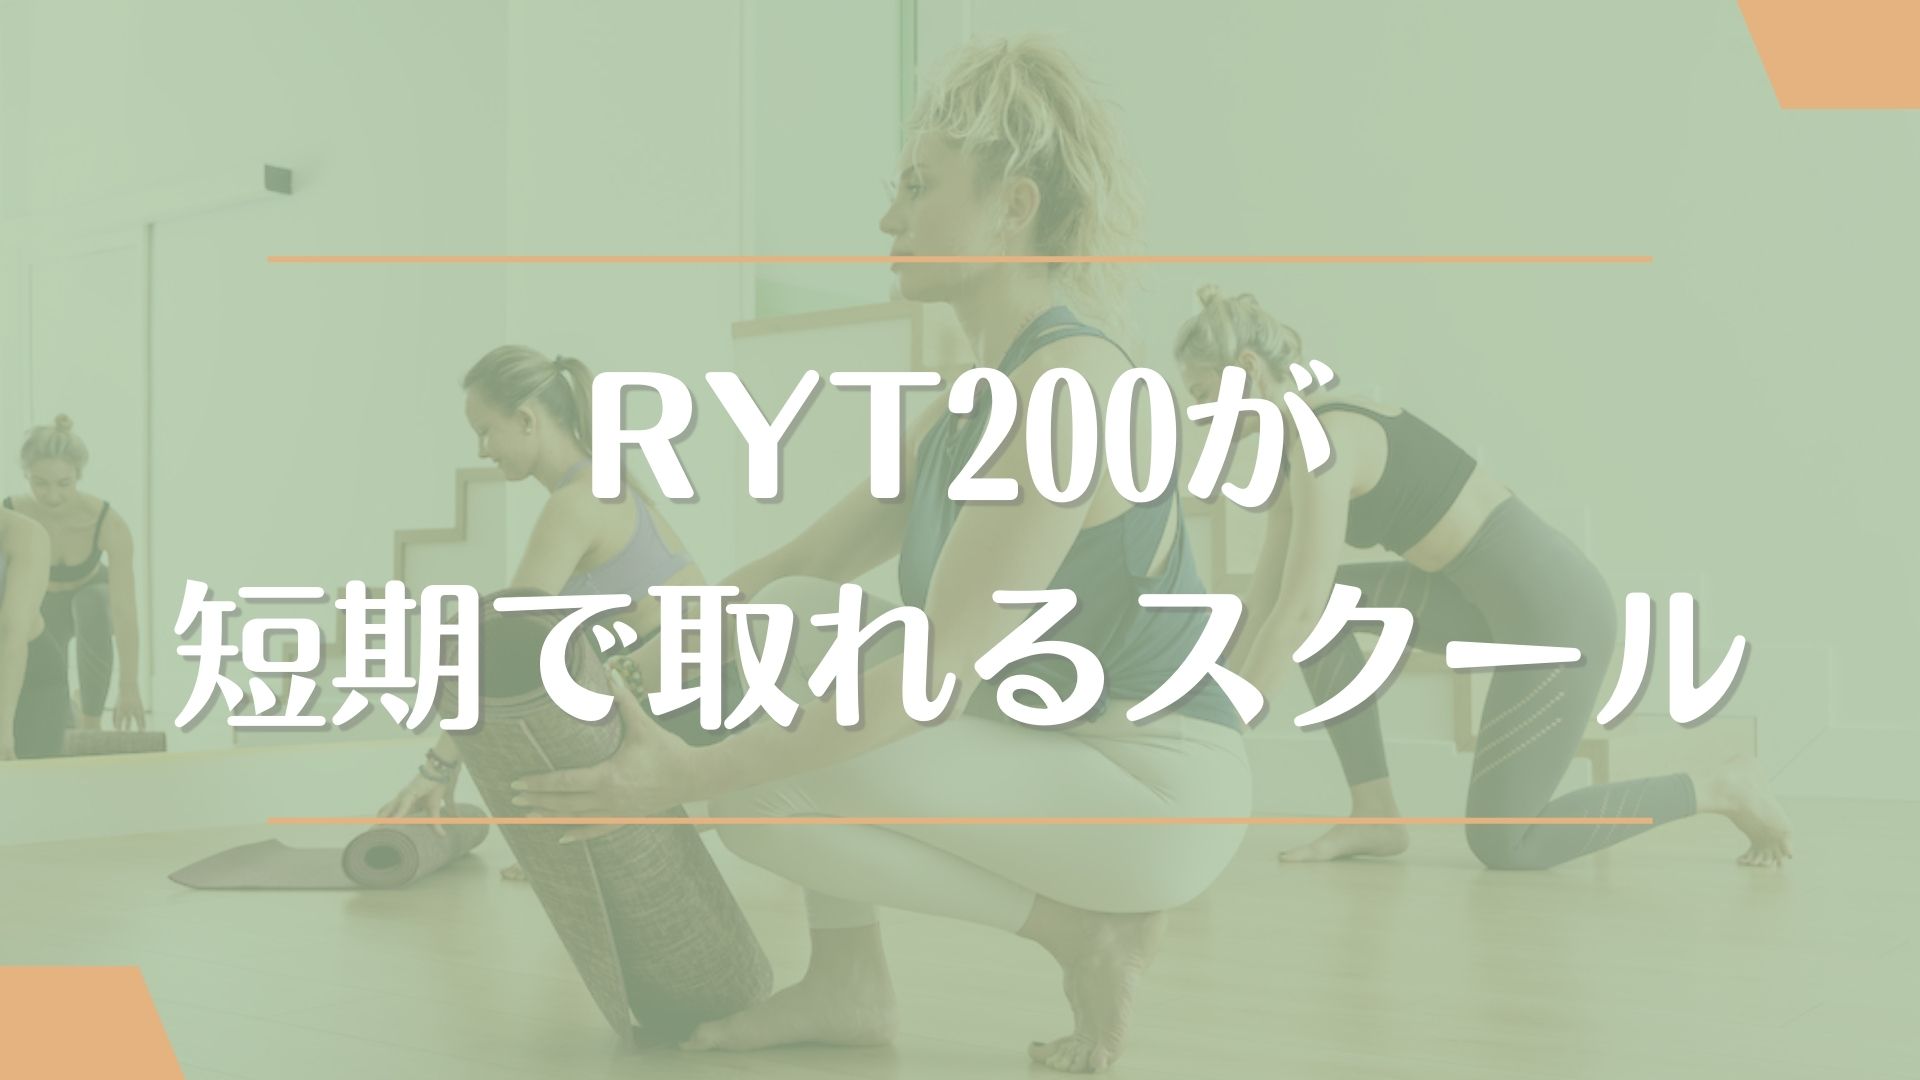 ヨガ資格『RYT200』が最短で取れるスクール